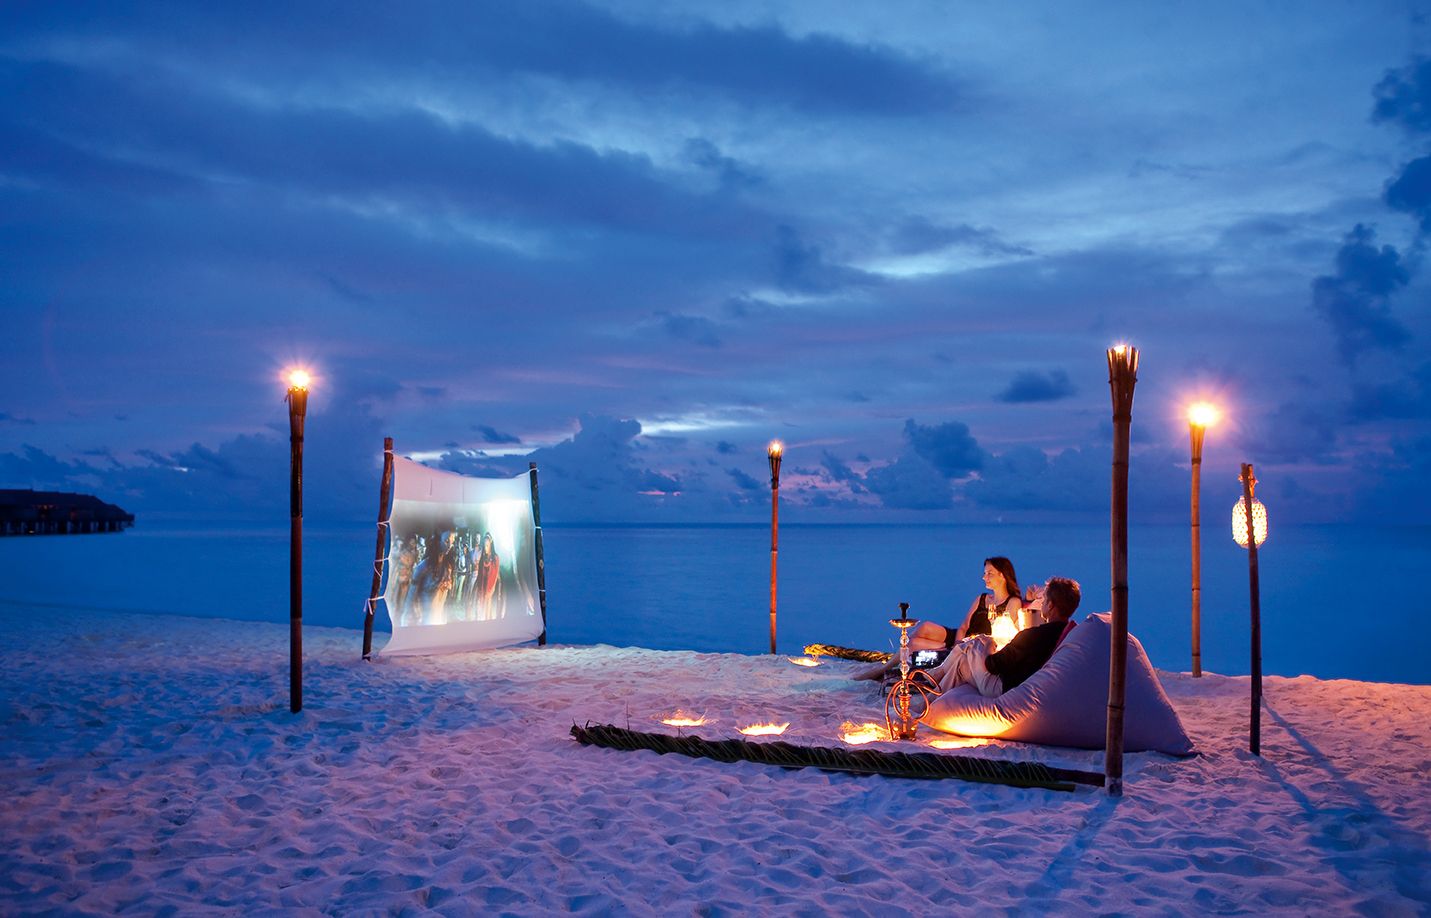 سینمای ساحلی بر روی ساحل شن سفید مالدیو در هتل کوکوبودهو در ویژه زوج های جوان